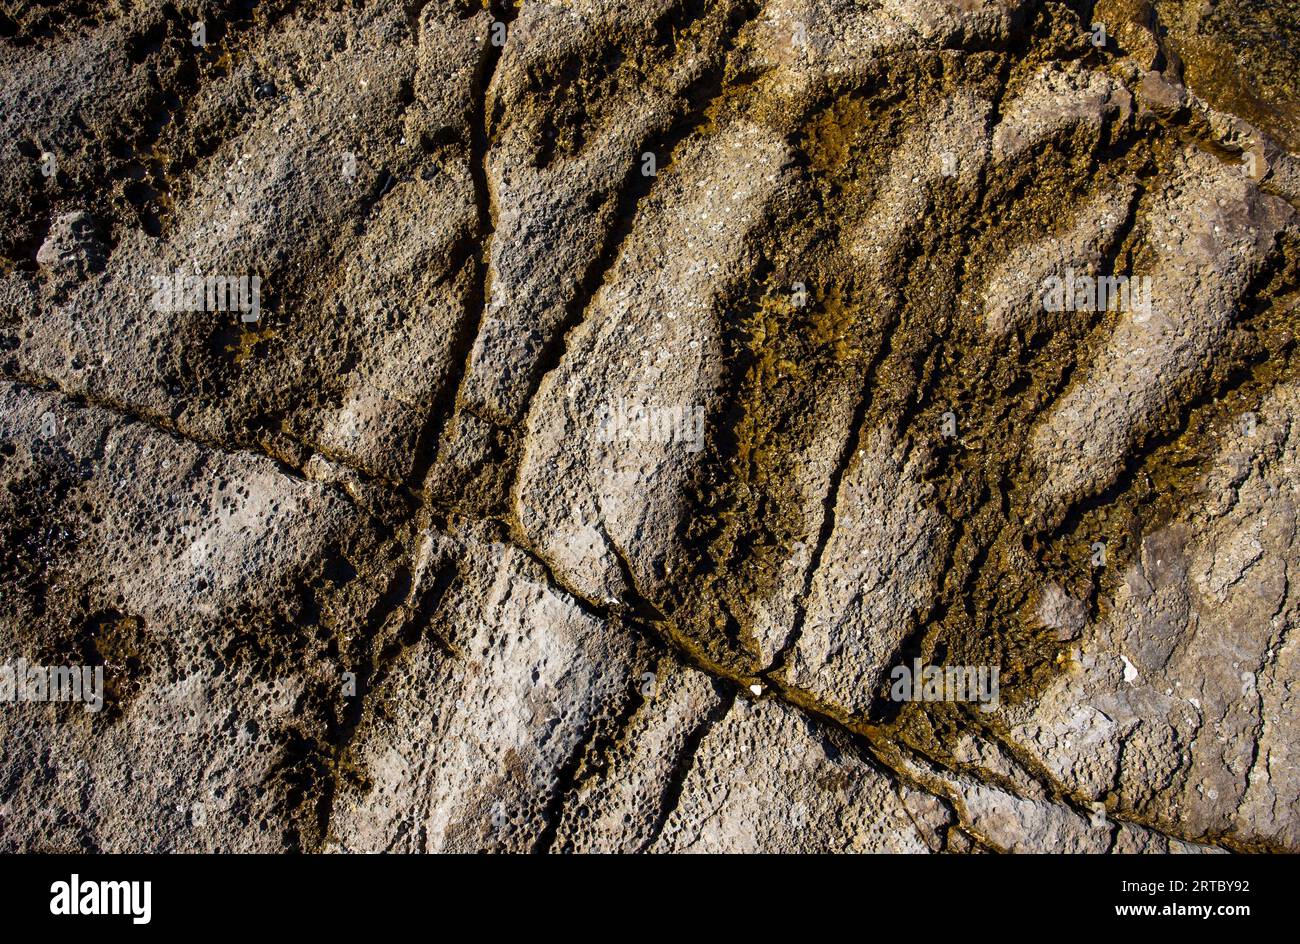 Immagine astratta, motivo in pietra bagnata con muschio negli spazi vuoti sulla costa del mare Foto Stock